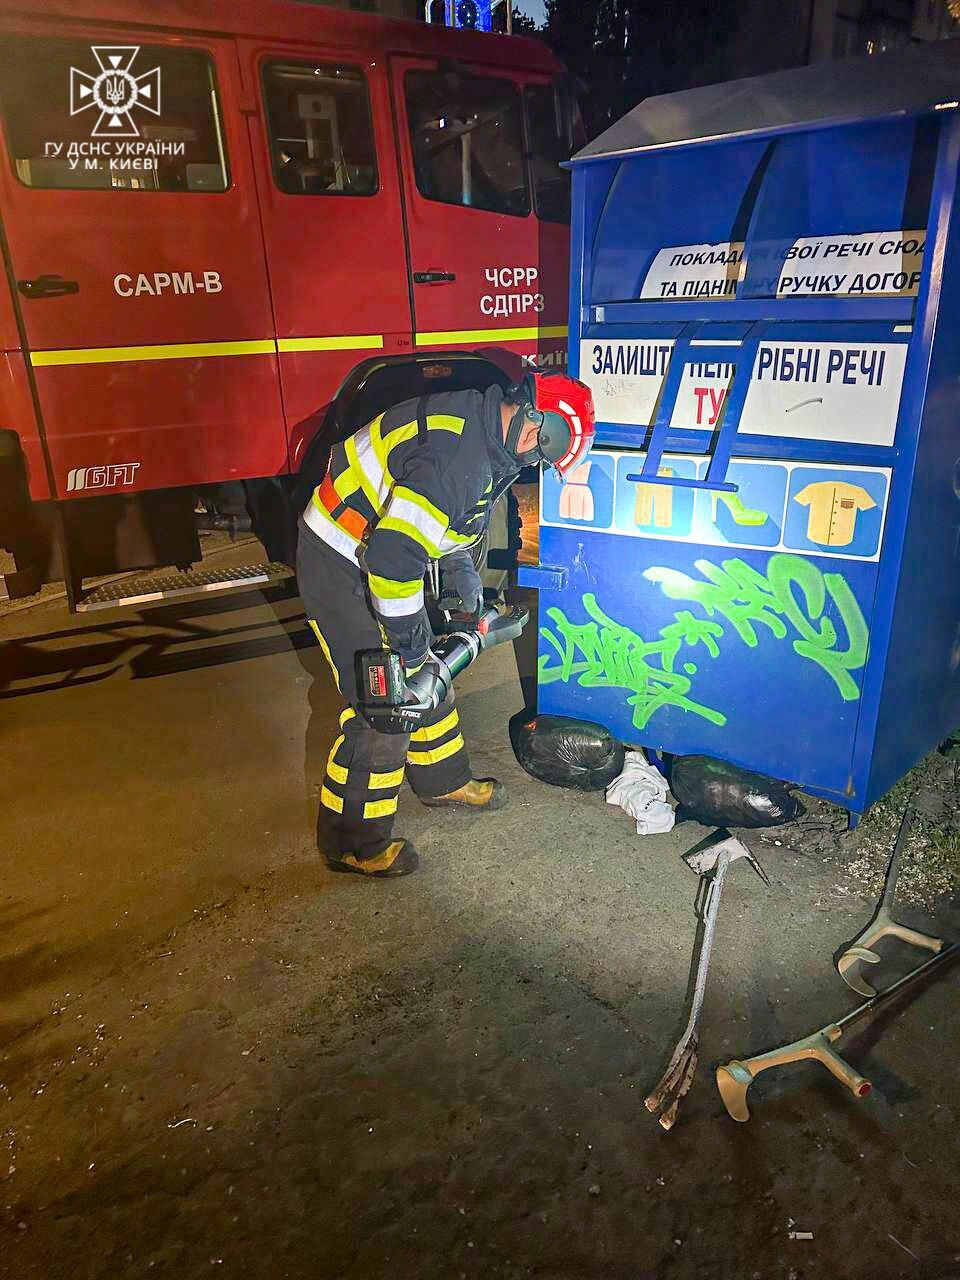 В Киеве спасатели помогли подростку, застрявшему в контейнере для сбора вещей. Фото